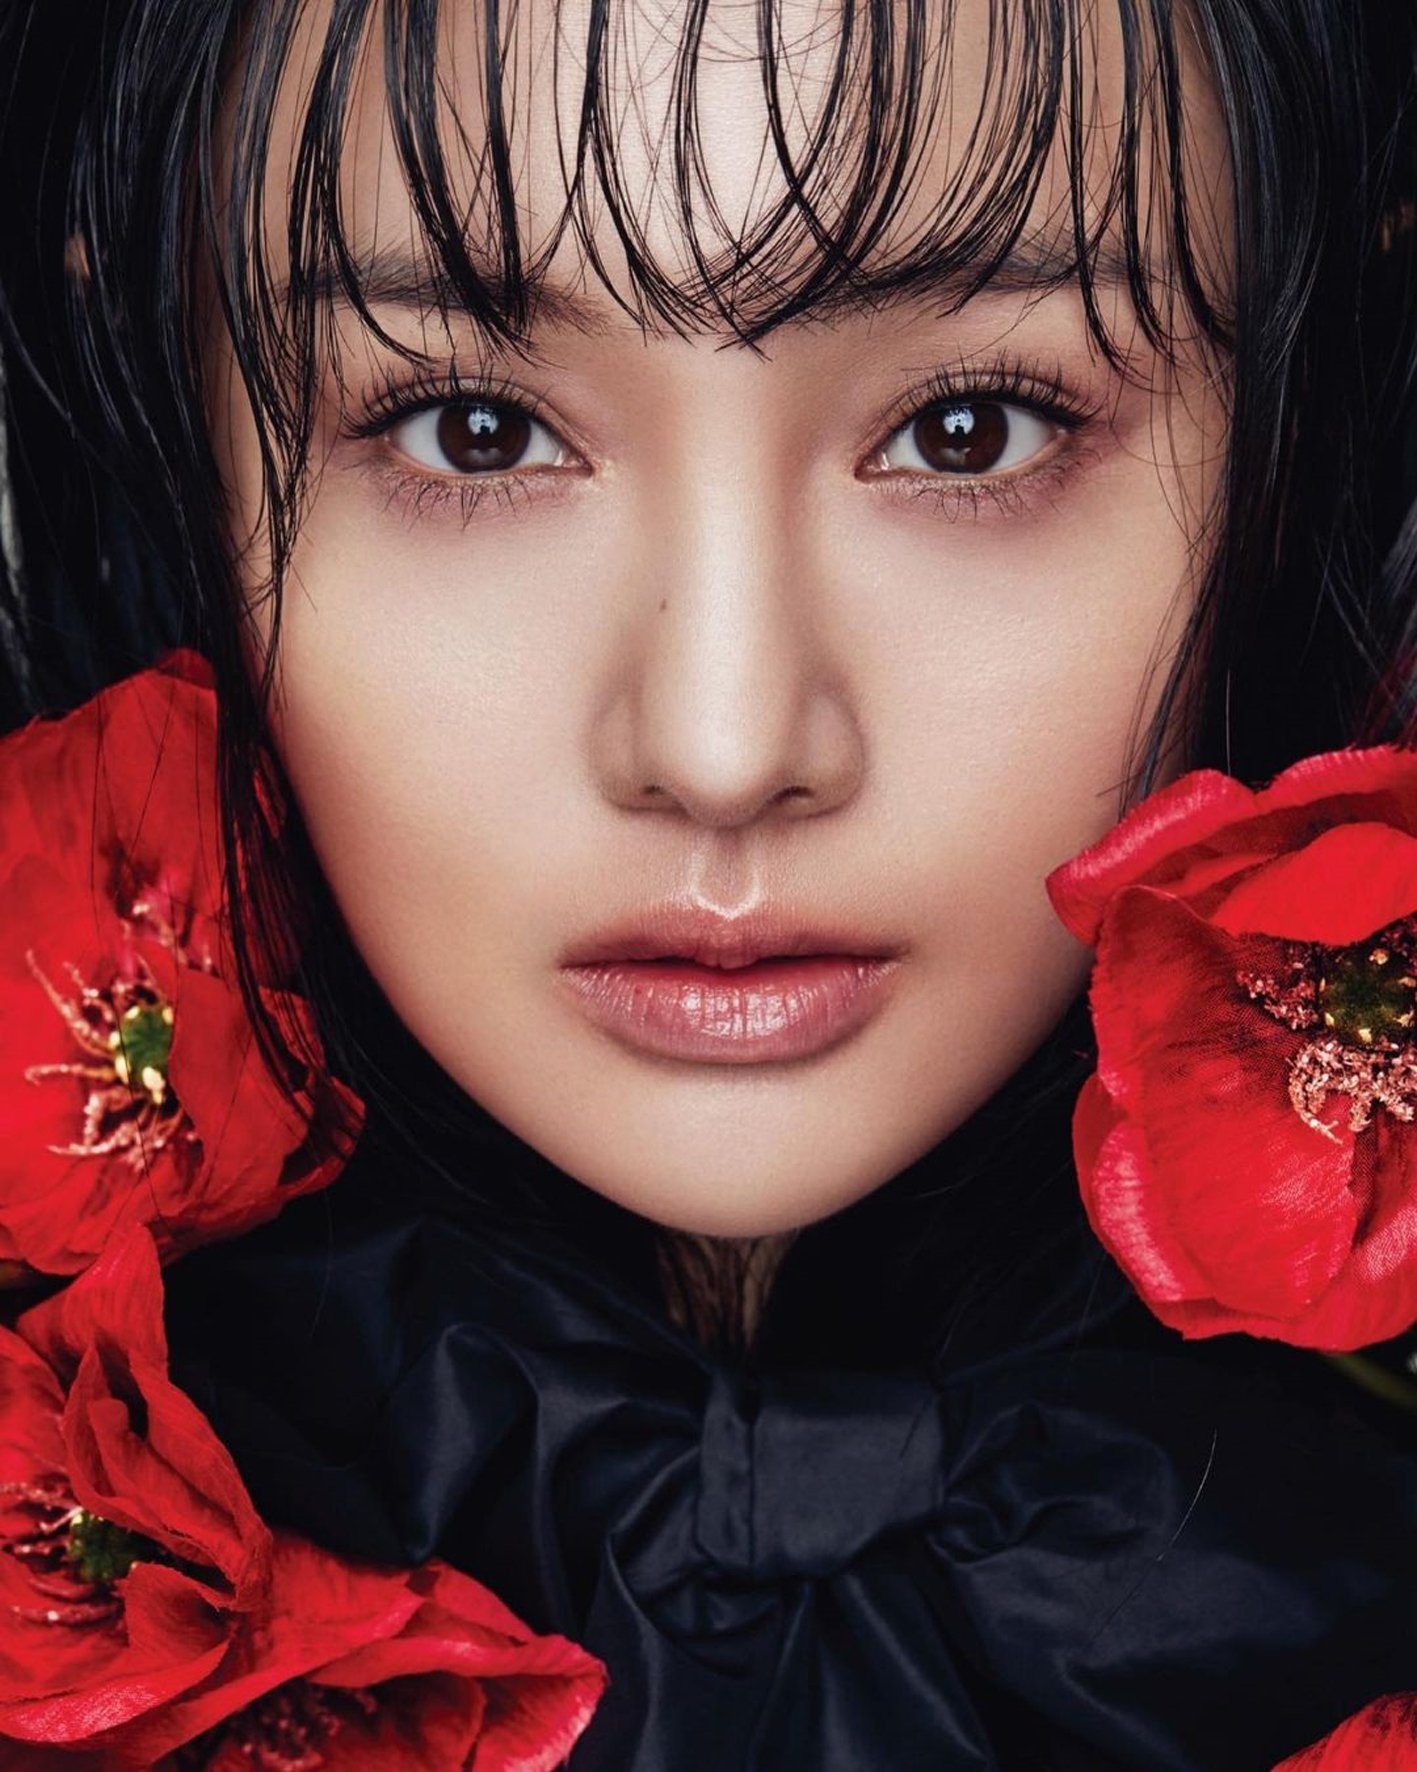 Hình ảnh Trịnh Sảng chụp cho tạp chí, được nữ diễn viên chia sẻ trên Instagram